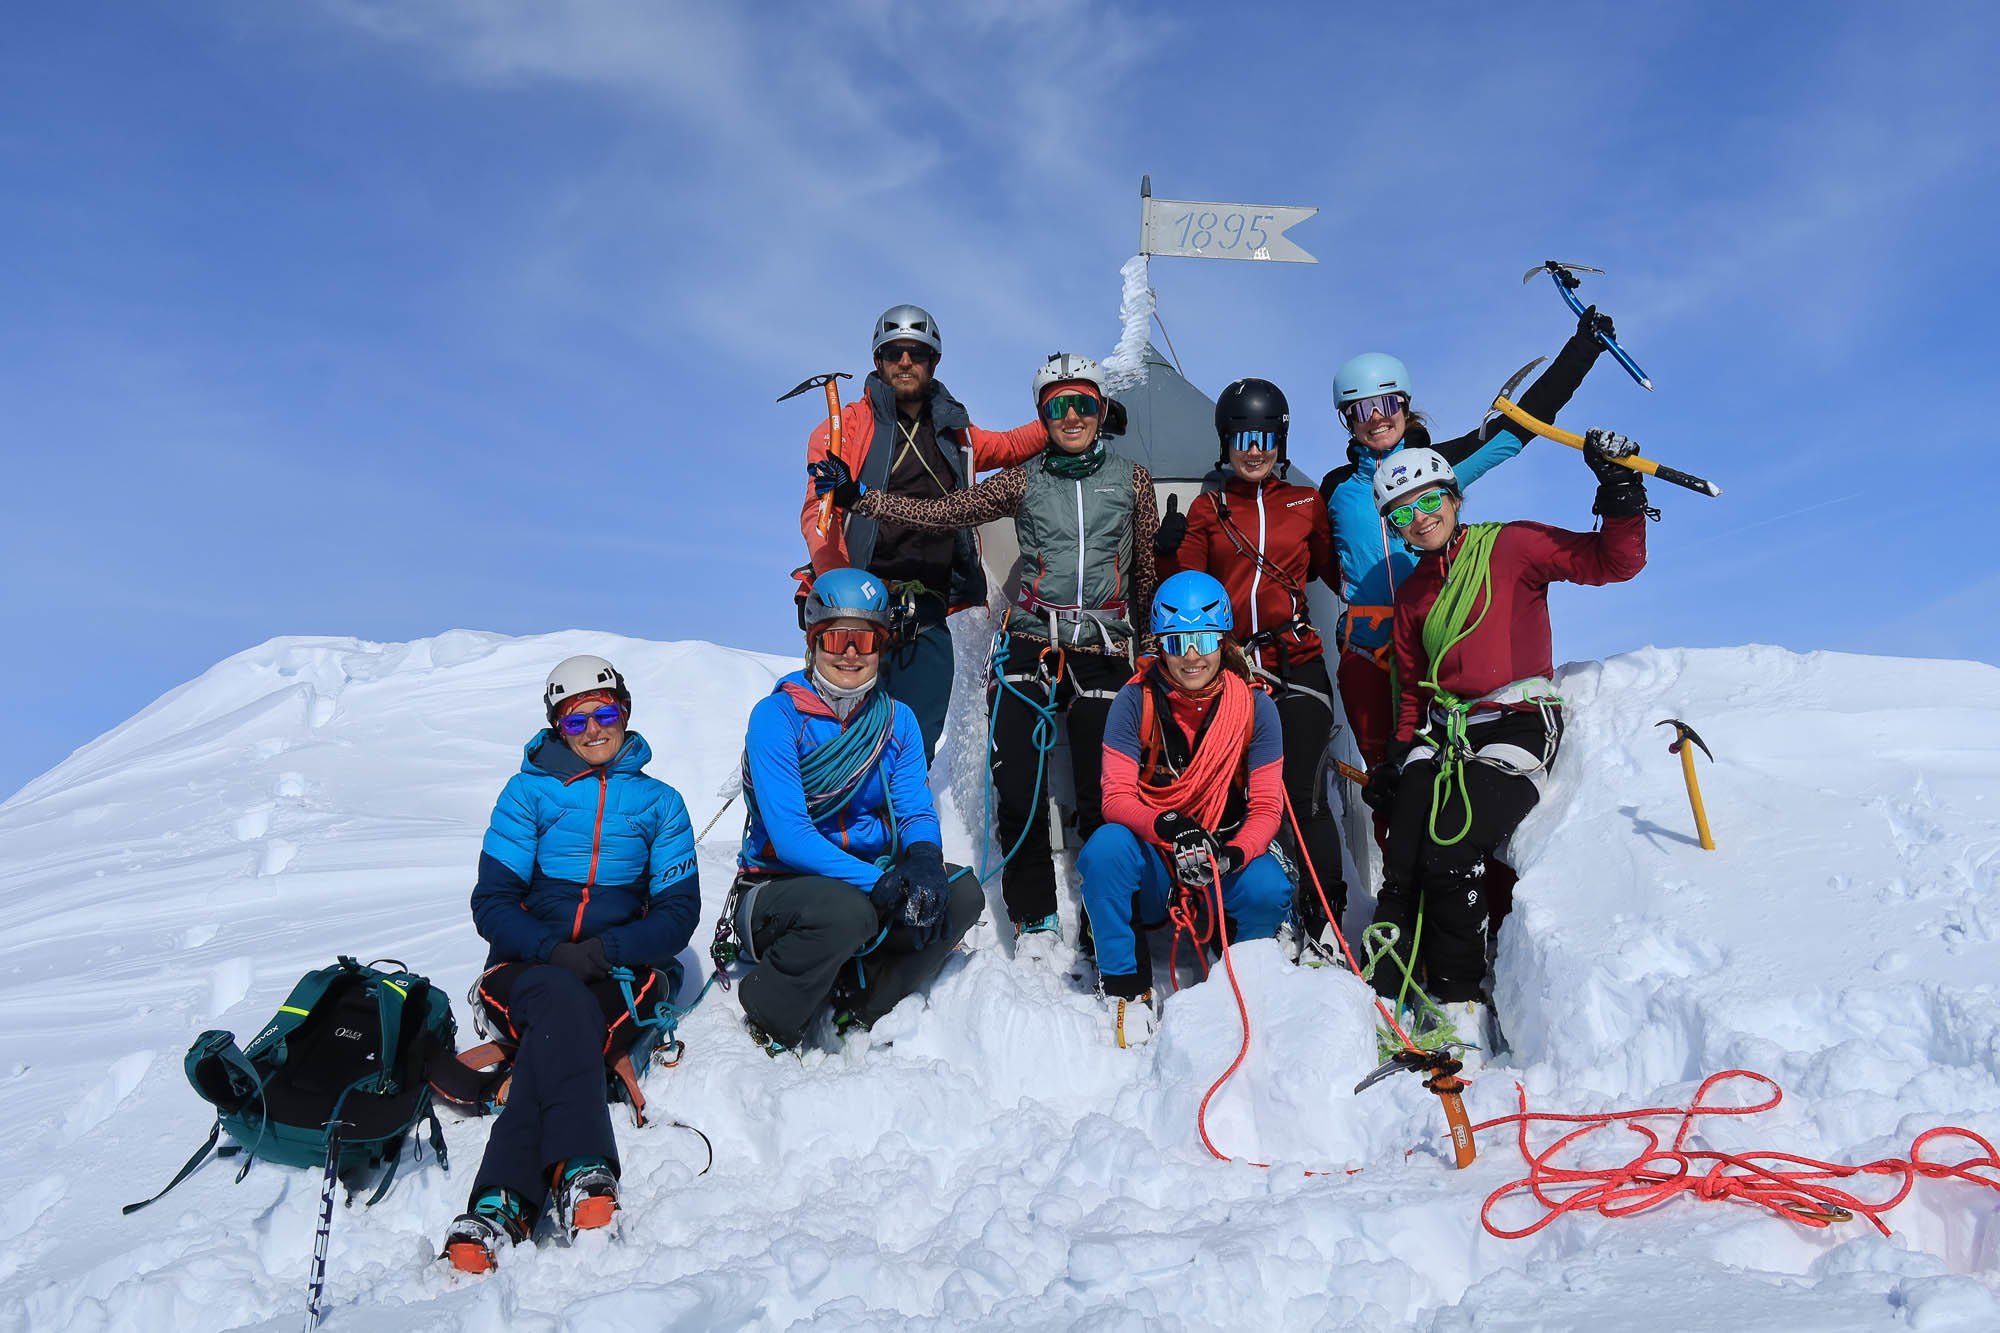 ALPINIST: Exklusivaktion für Alpinistinnen 2.0